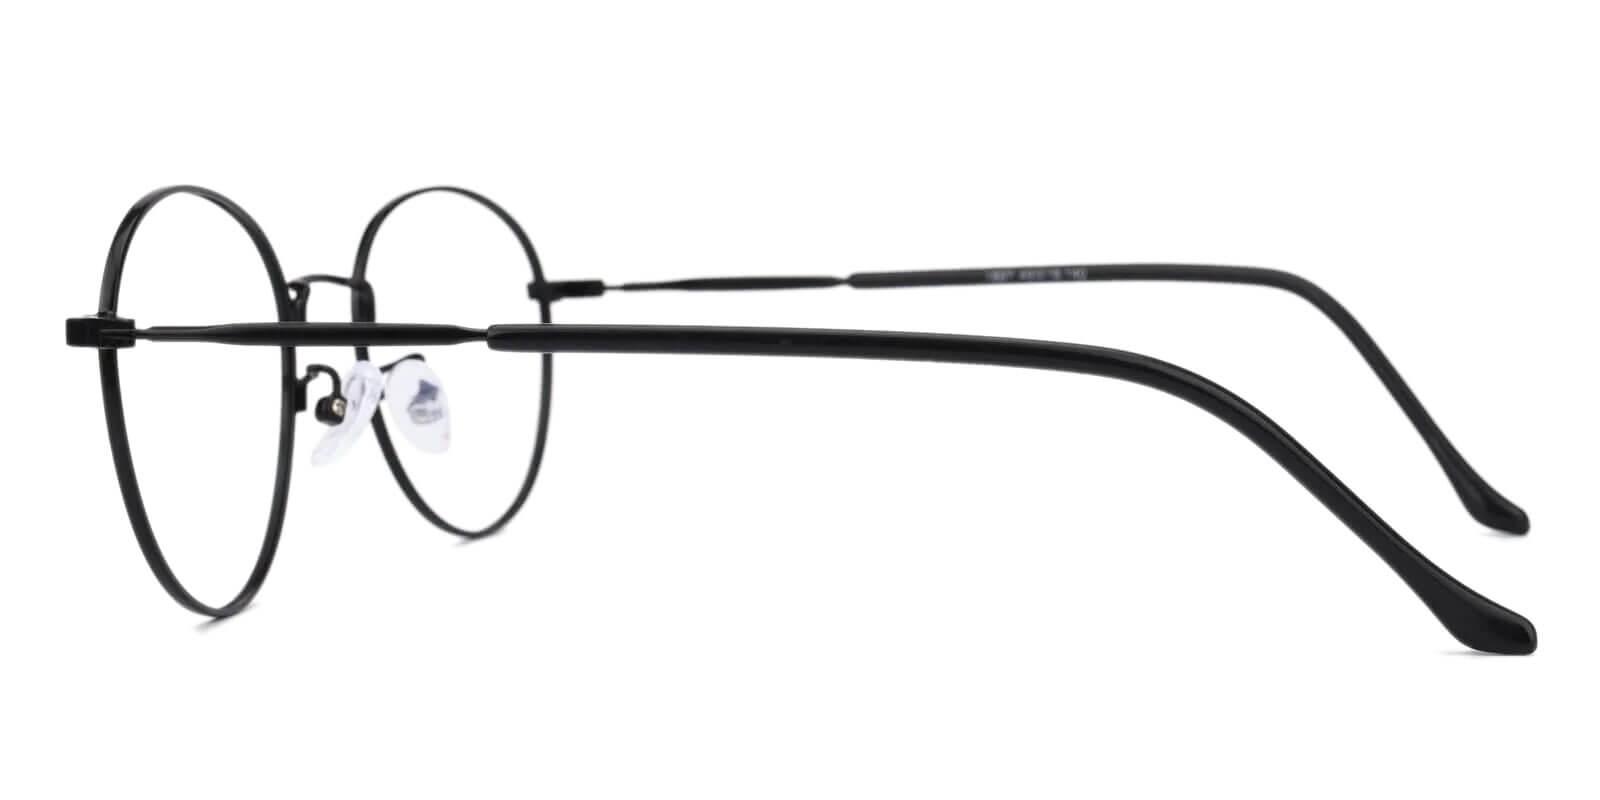 Joe Black Metal Eyeglasses , NosePads Frames from ABBE Glasses